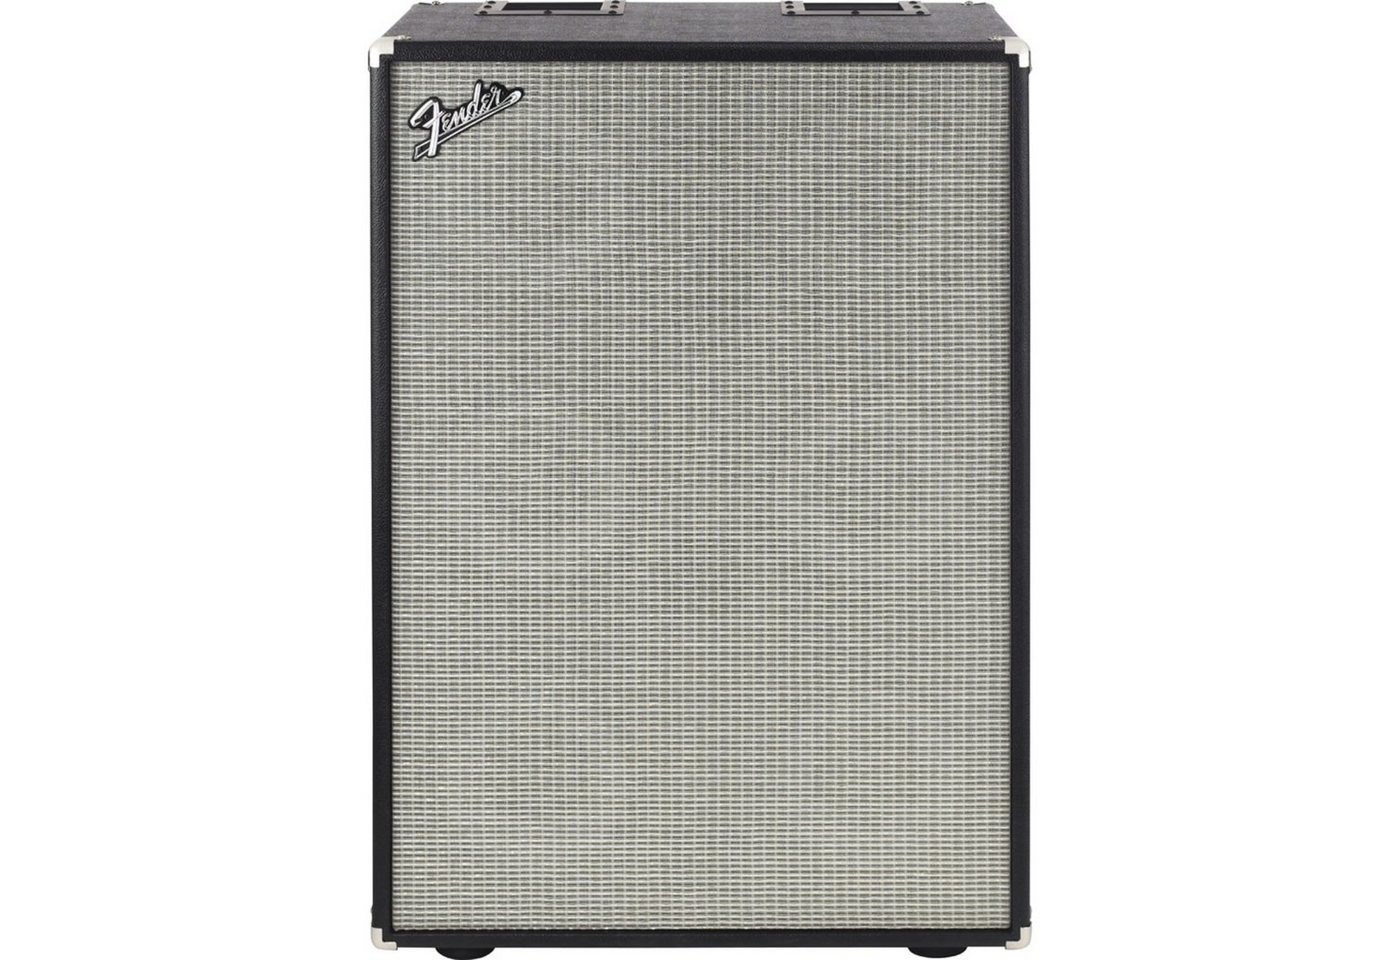 Fender Lautsprecher (Bassman 610 Neo Cabinet - 6x10 Bass Box)" von Fender